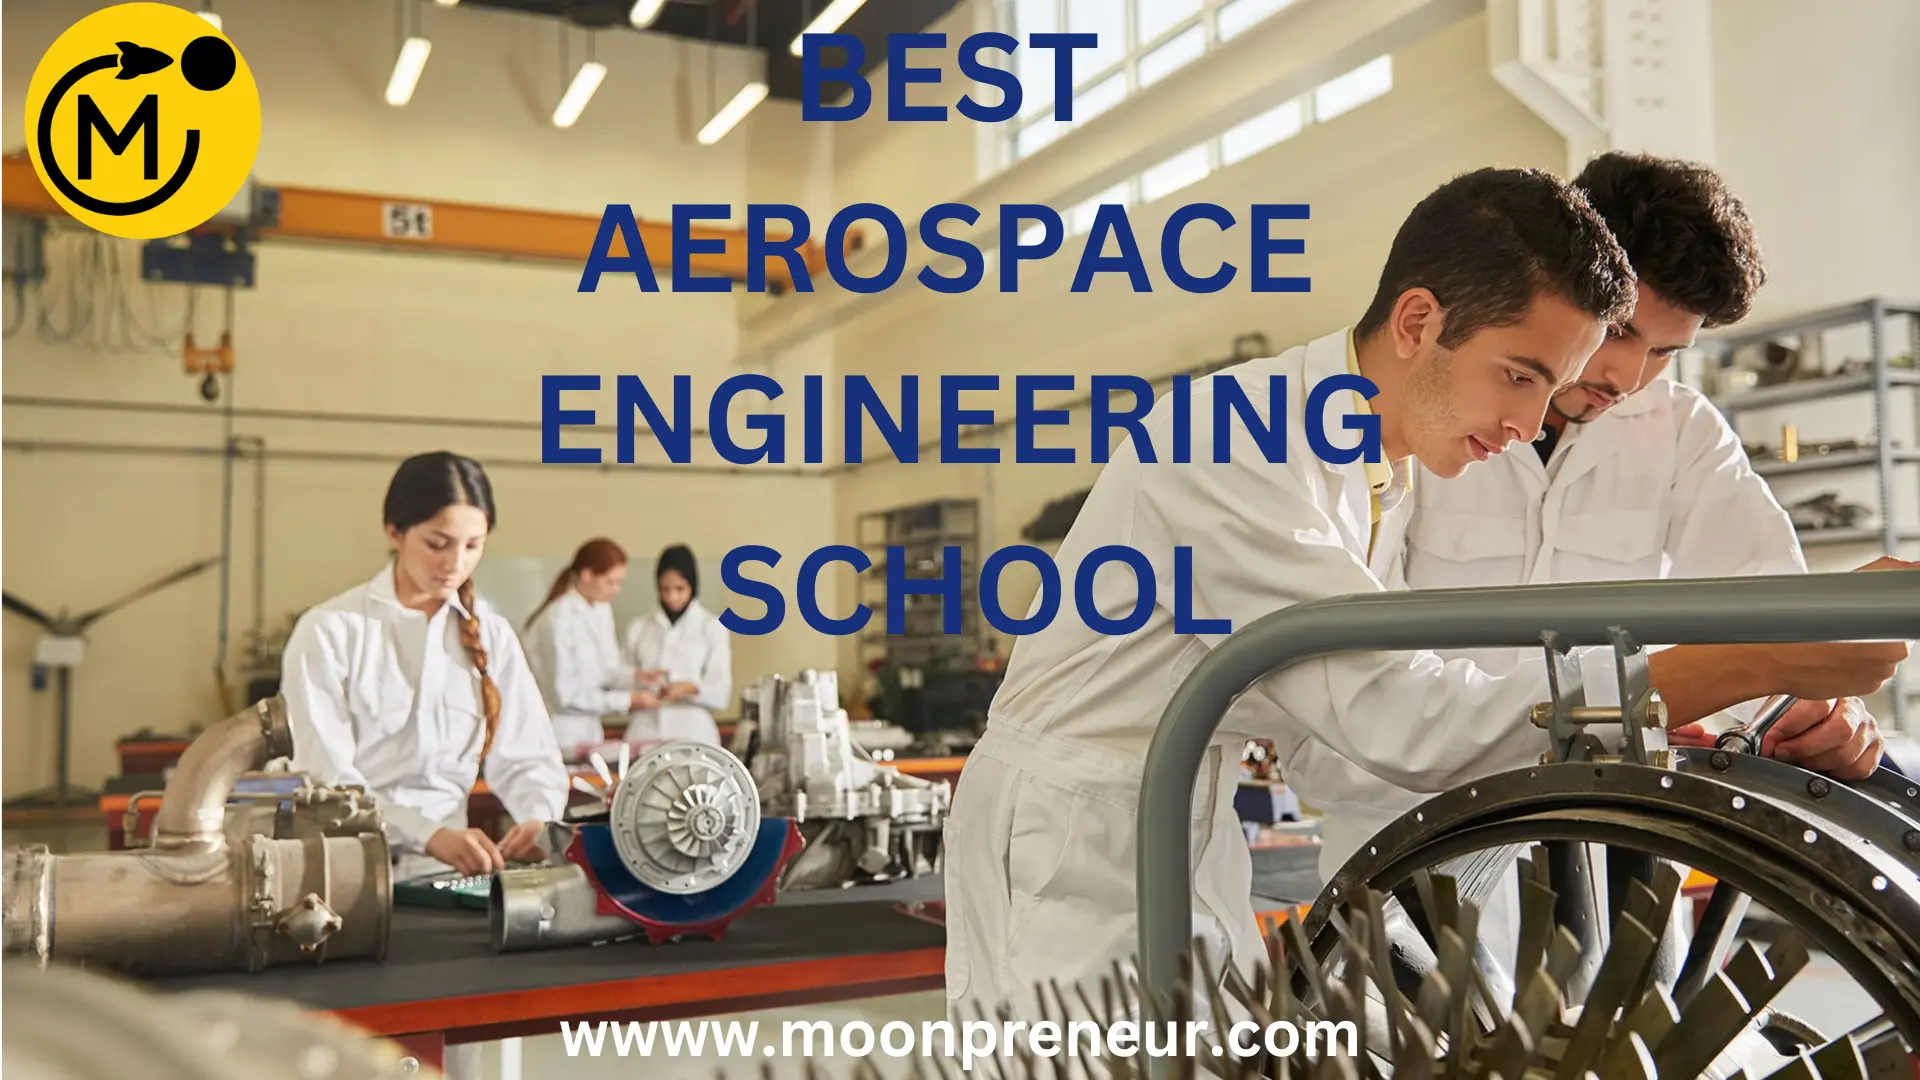 BEST AEROSPACE ENGINEERING SCHOOL